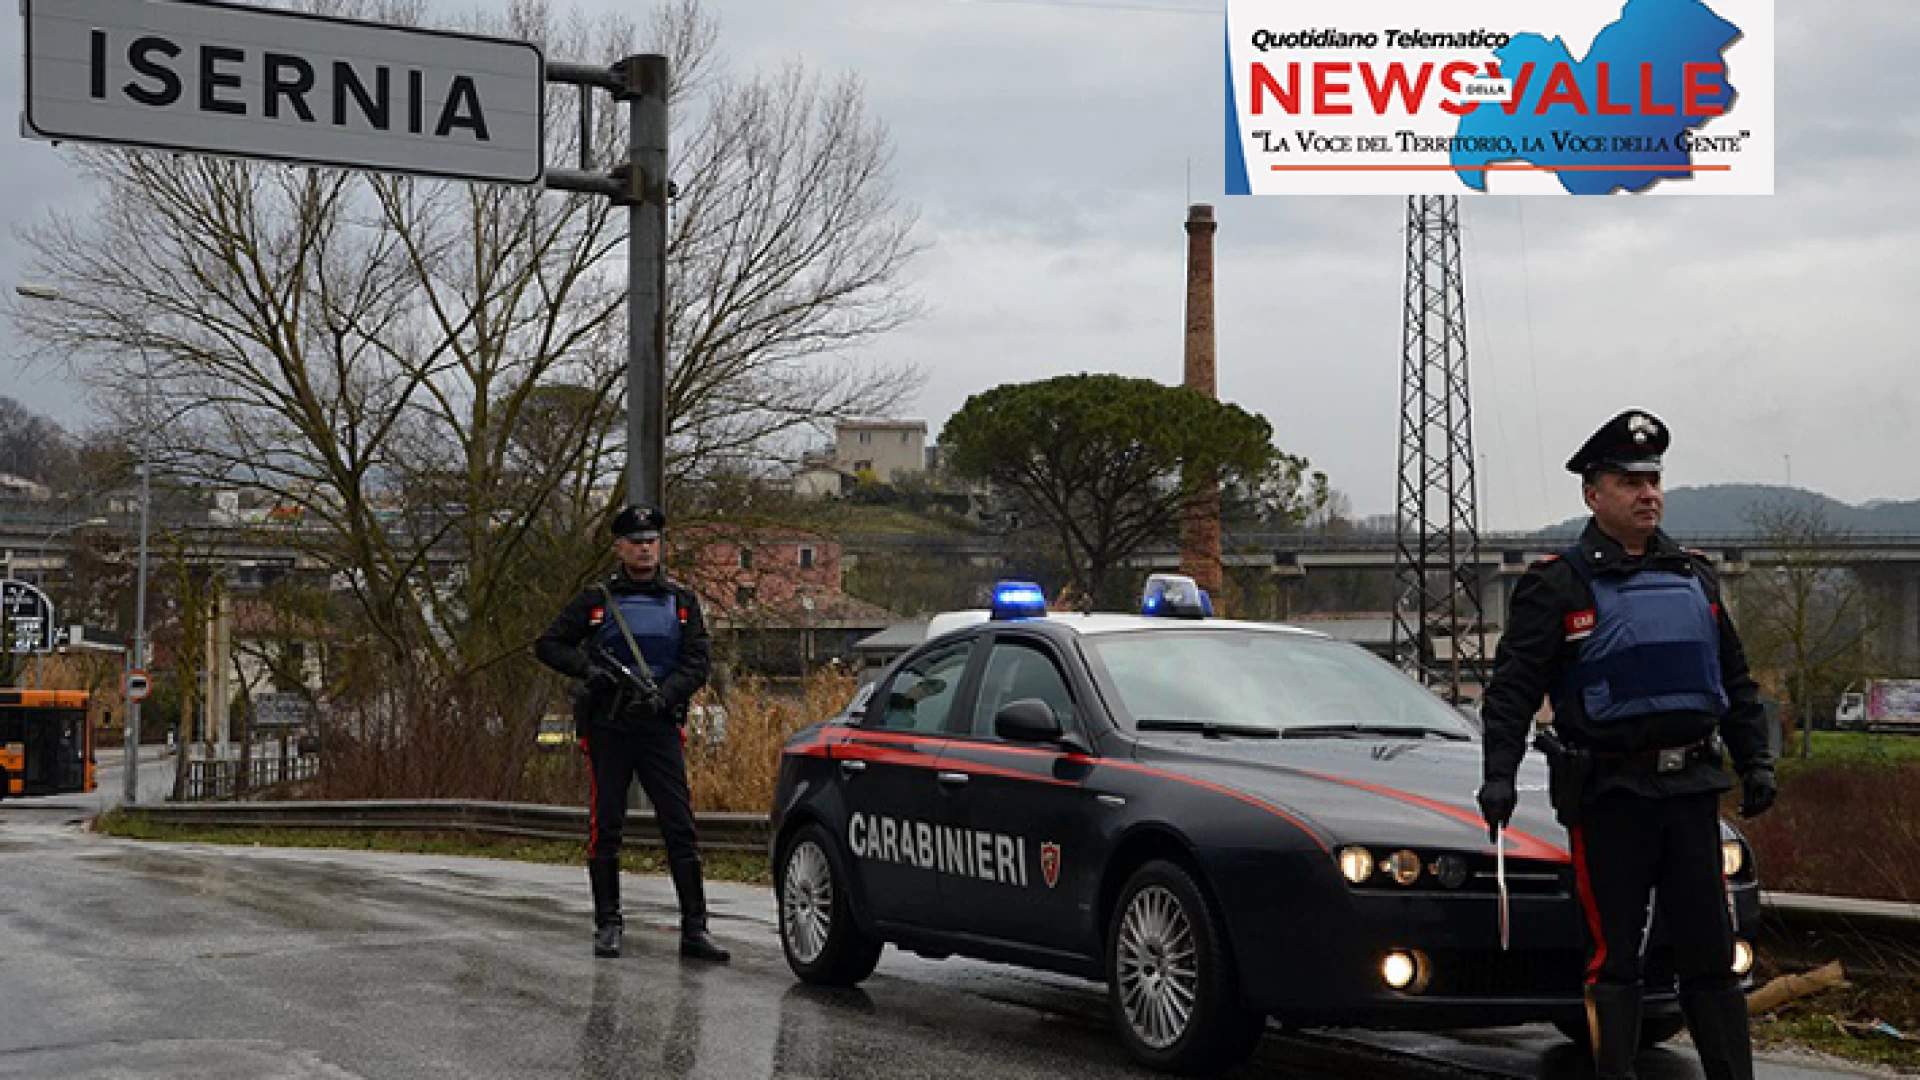 Filignano: false residenze per truffare le compagnie assicurative. I Carabinieri beccano due napoletani.